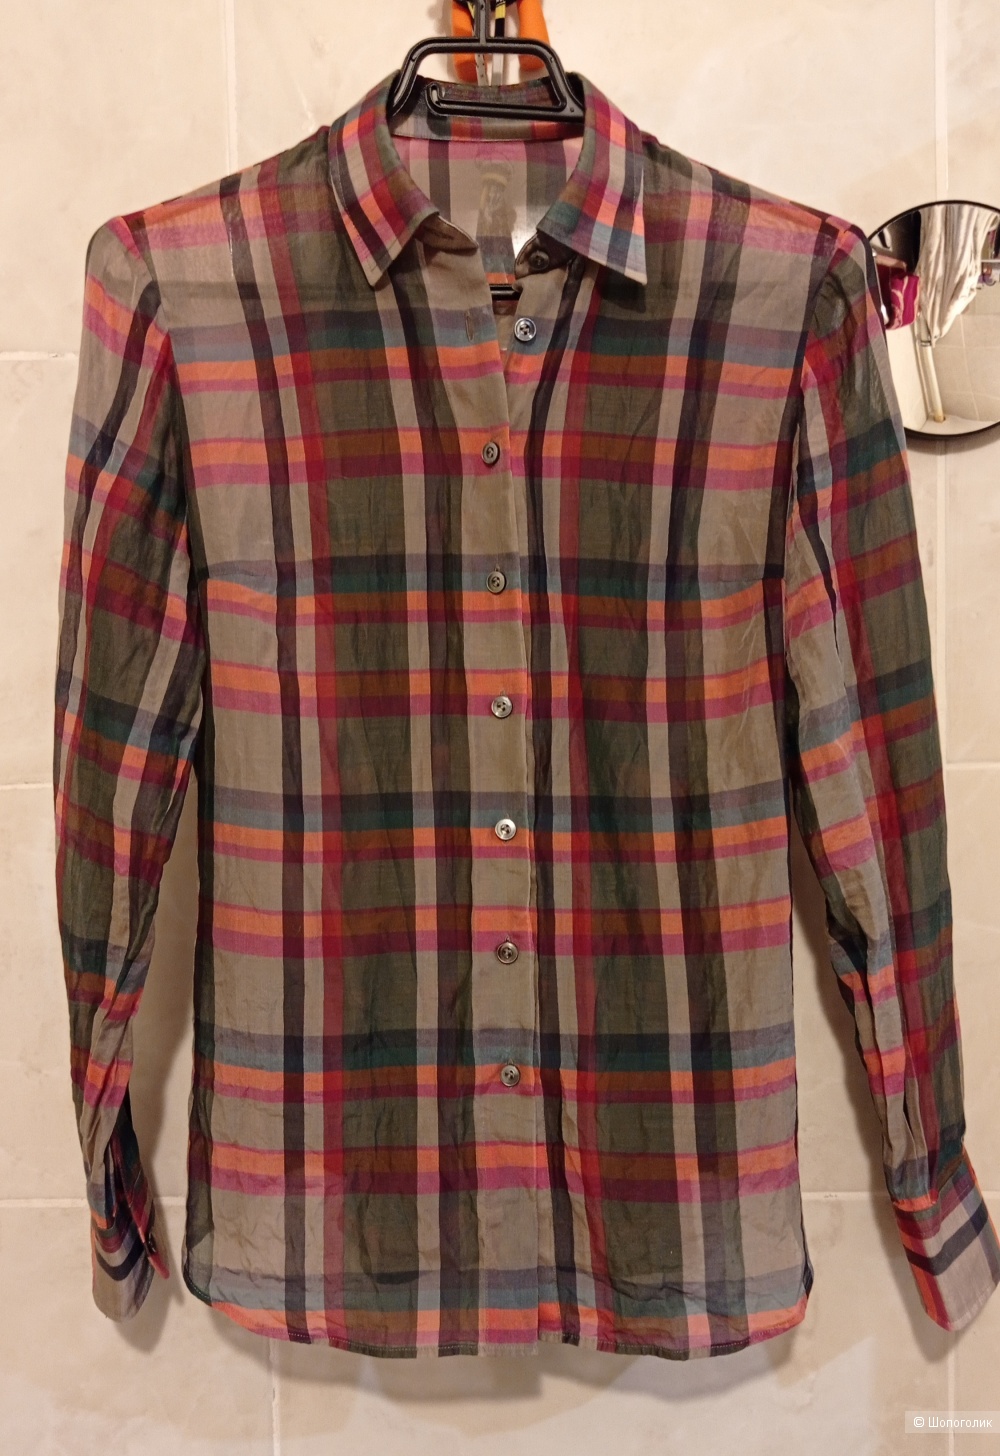 Andrew Duck рубашка/блузка 42/44 размер